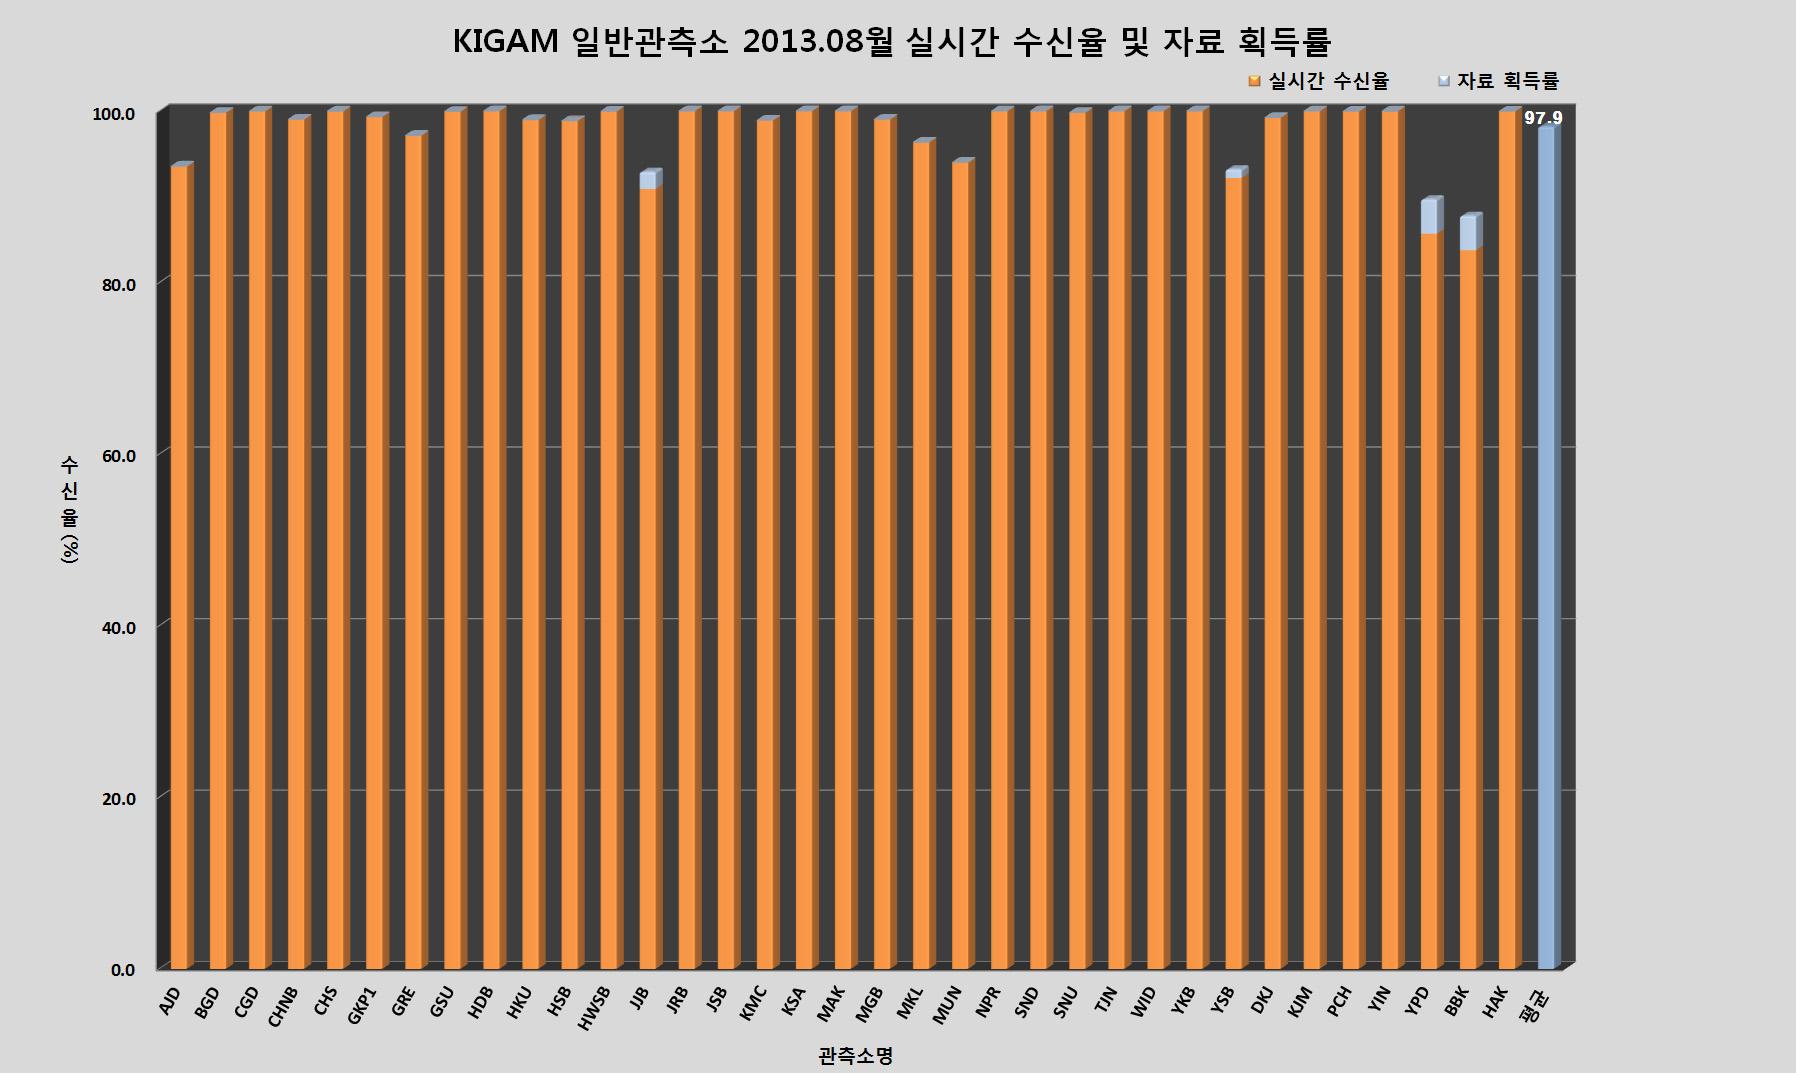 KIGAM 일반관측소 2013년 8월 실시간 수신율 및 자료 획득률